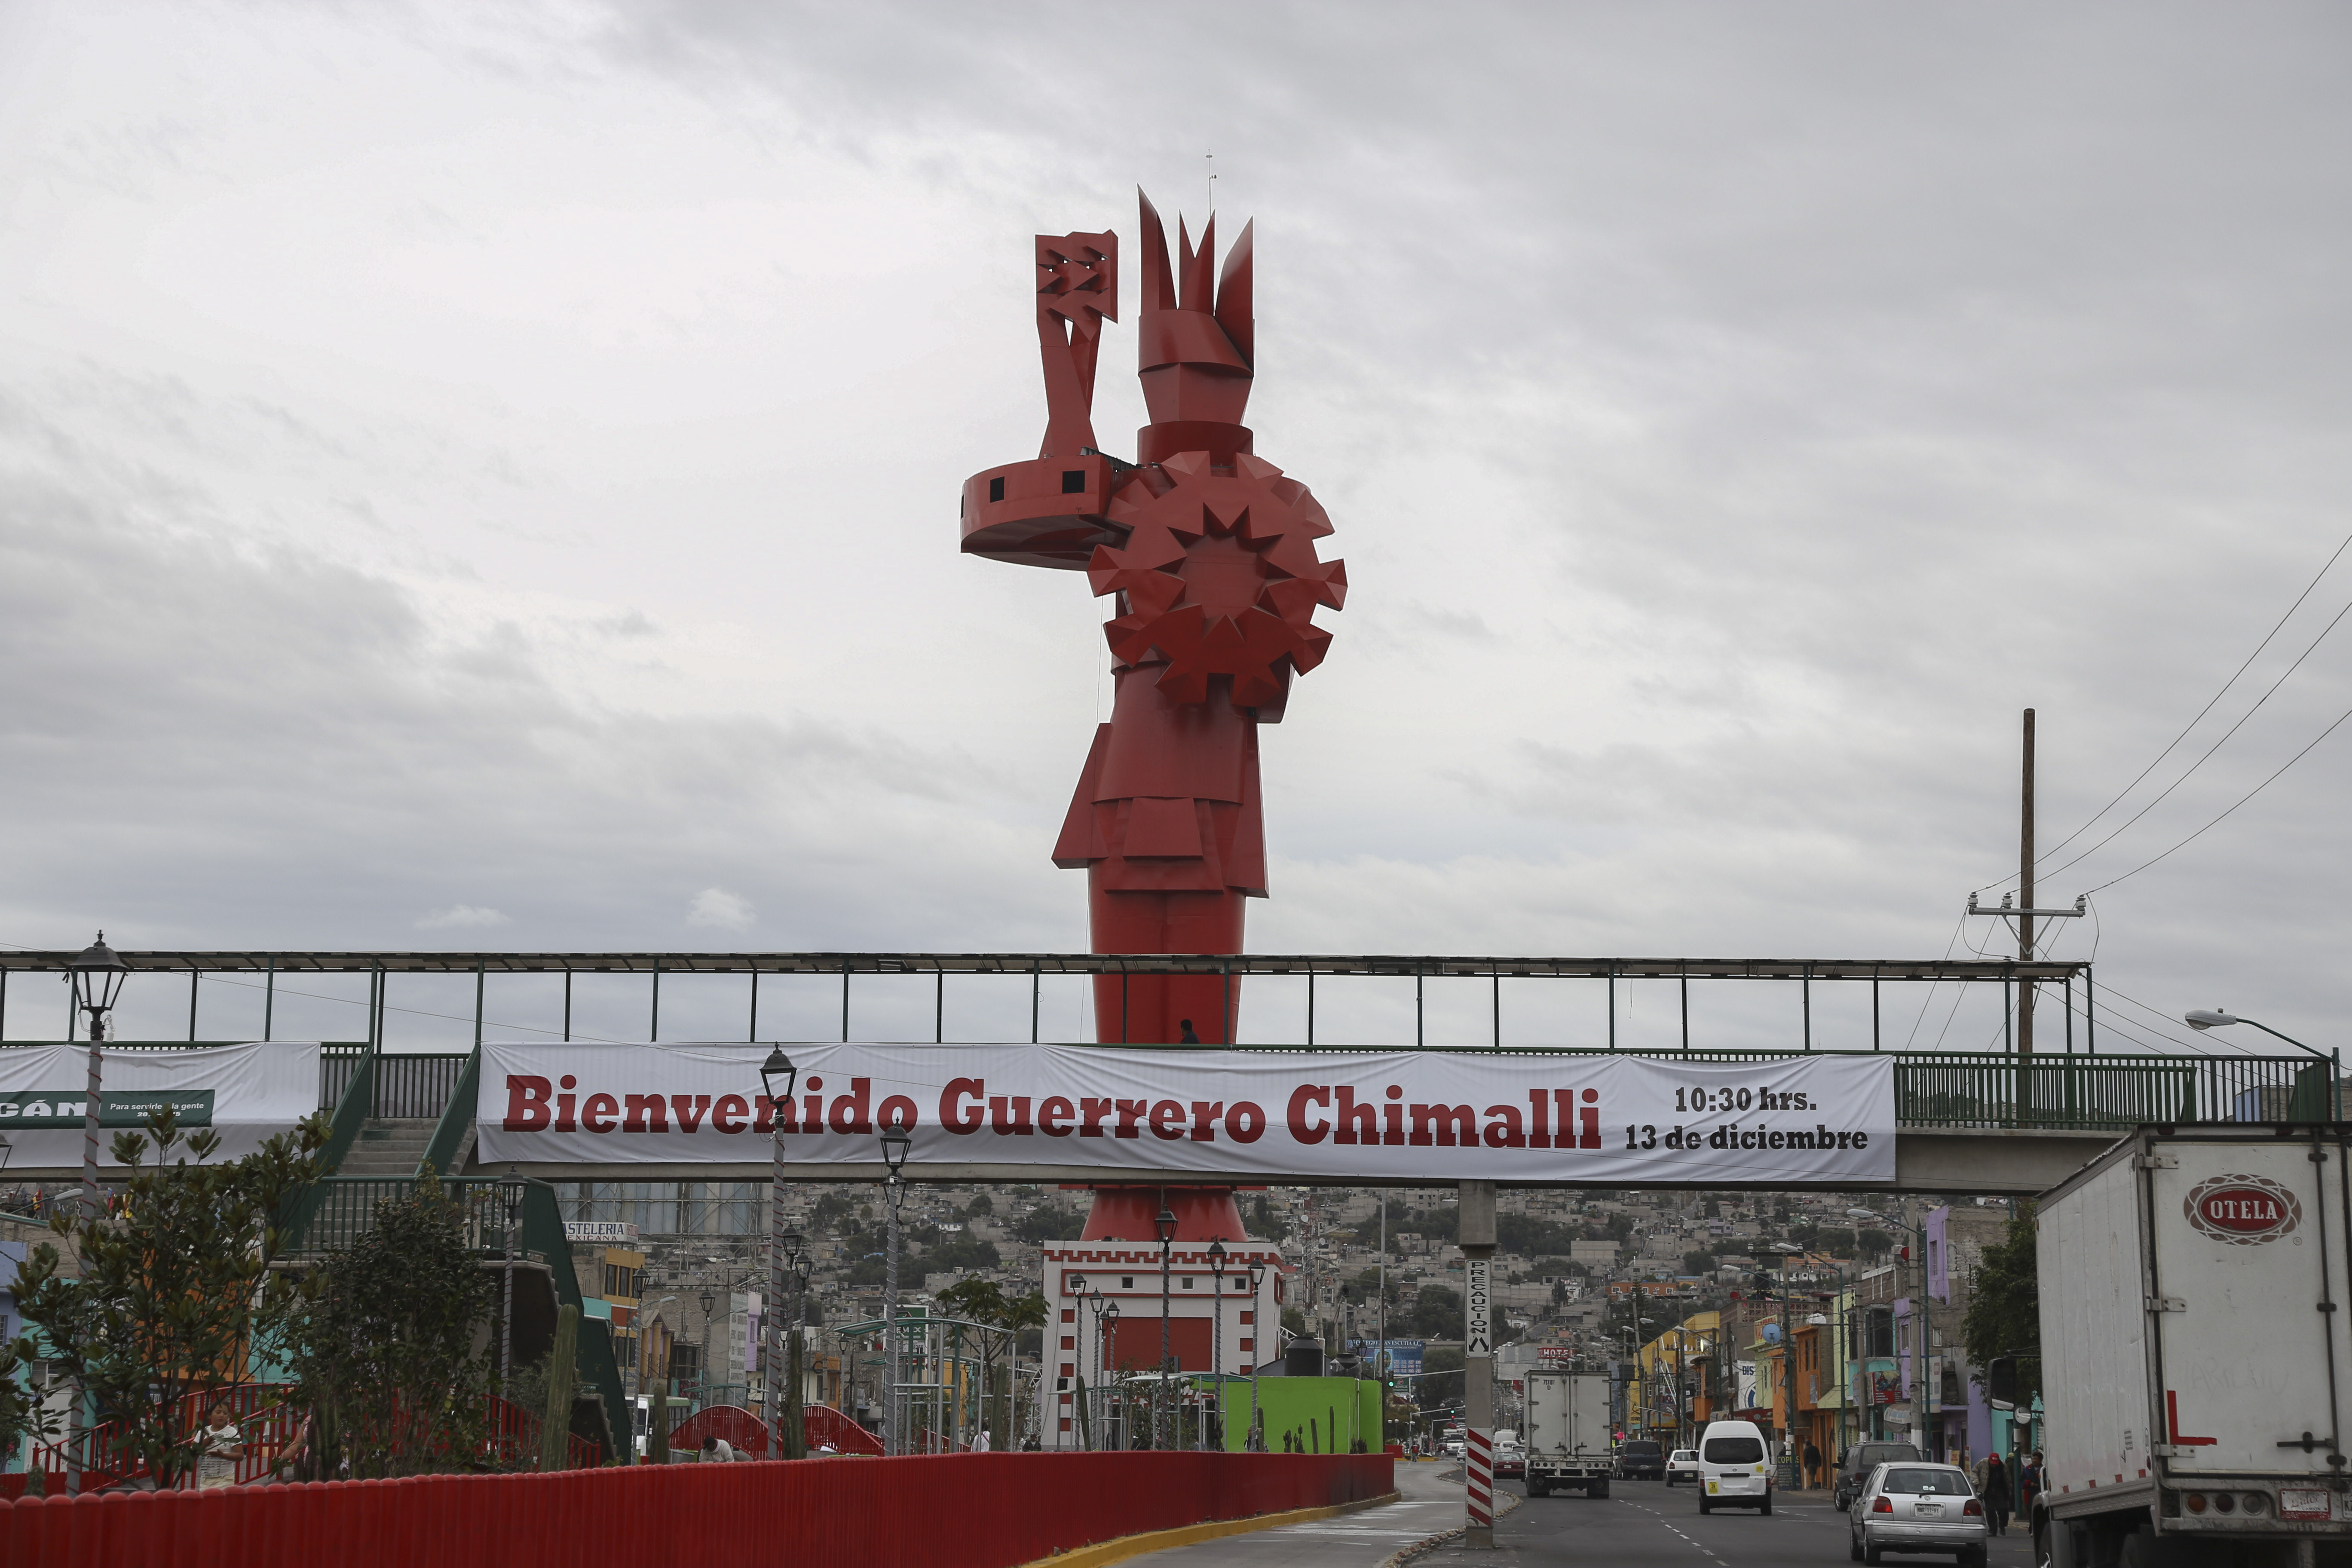 CHIMALHUACAN, ESTADO DE MÉXICO, 22DICIEMBRE2014.- El Guerrero Chimalli, obra del artista Sebastian, se ubicada en la continuación de la avenida bordo de xochiaca. Esta obra de arte pública tuvo un costo de 35 millones de pesos que fue pagado por el gobierno municipal de Chimalhuacan.
FOTO: SAÚL LÓPEZ /CUARTOSCURO.COM